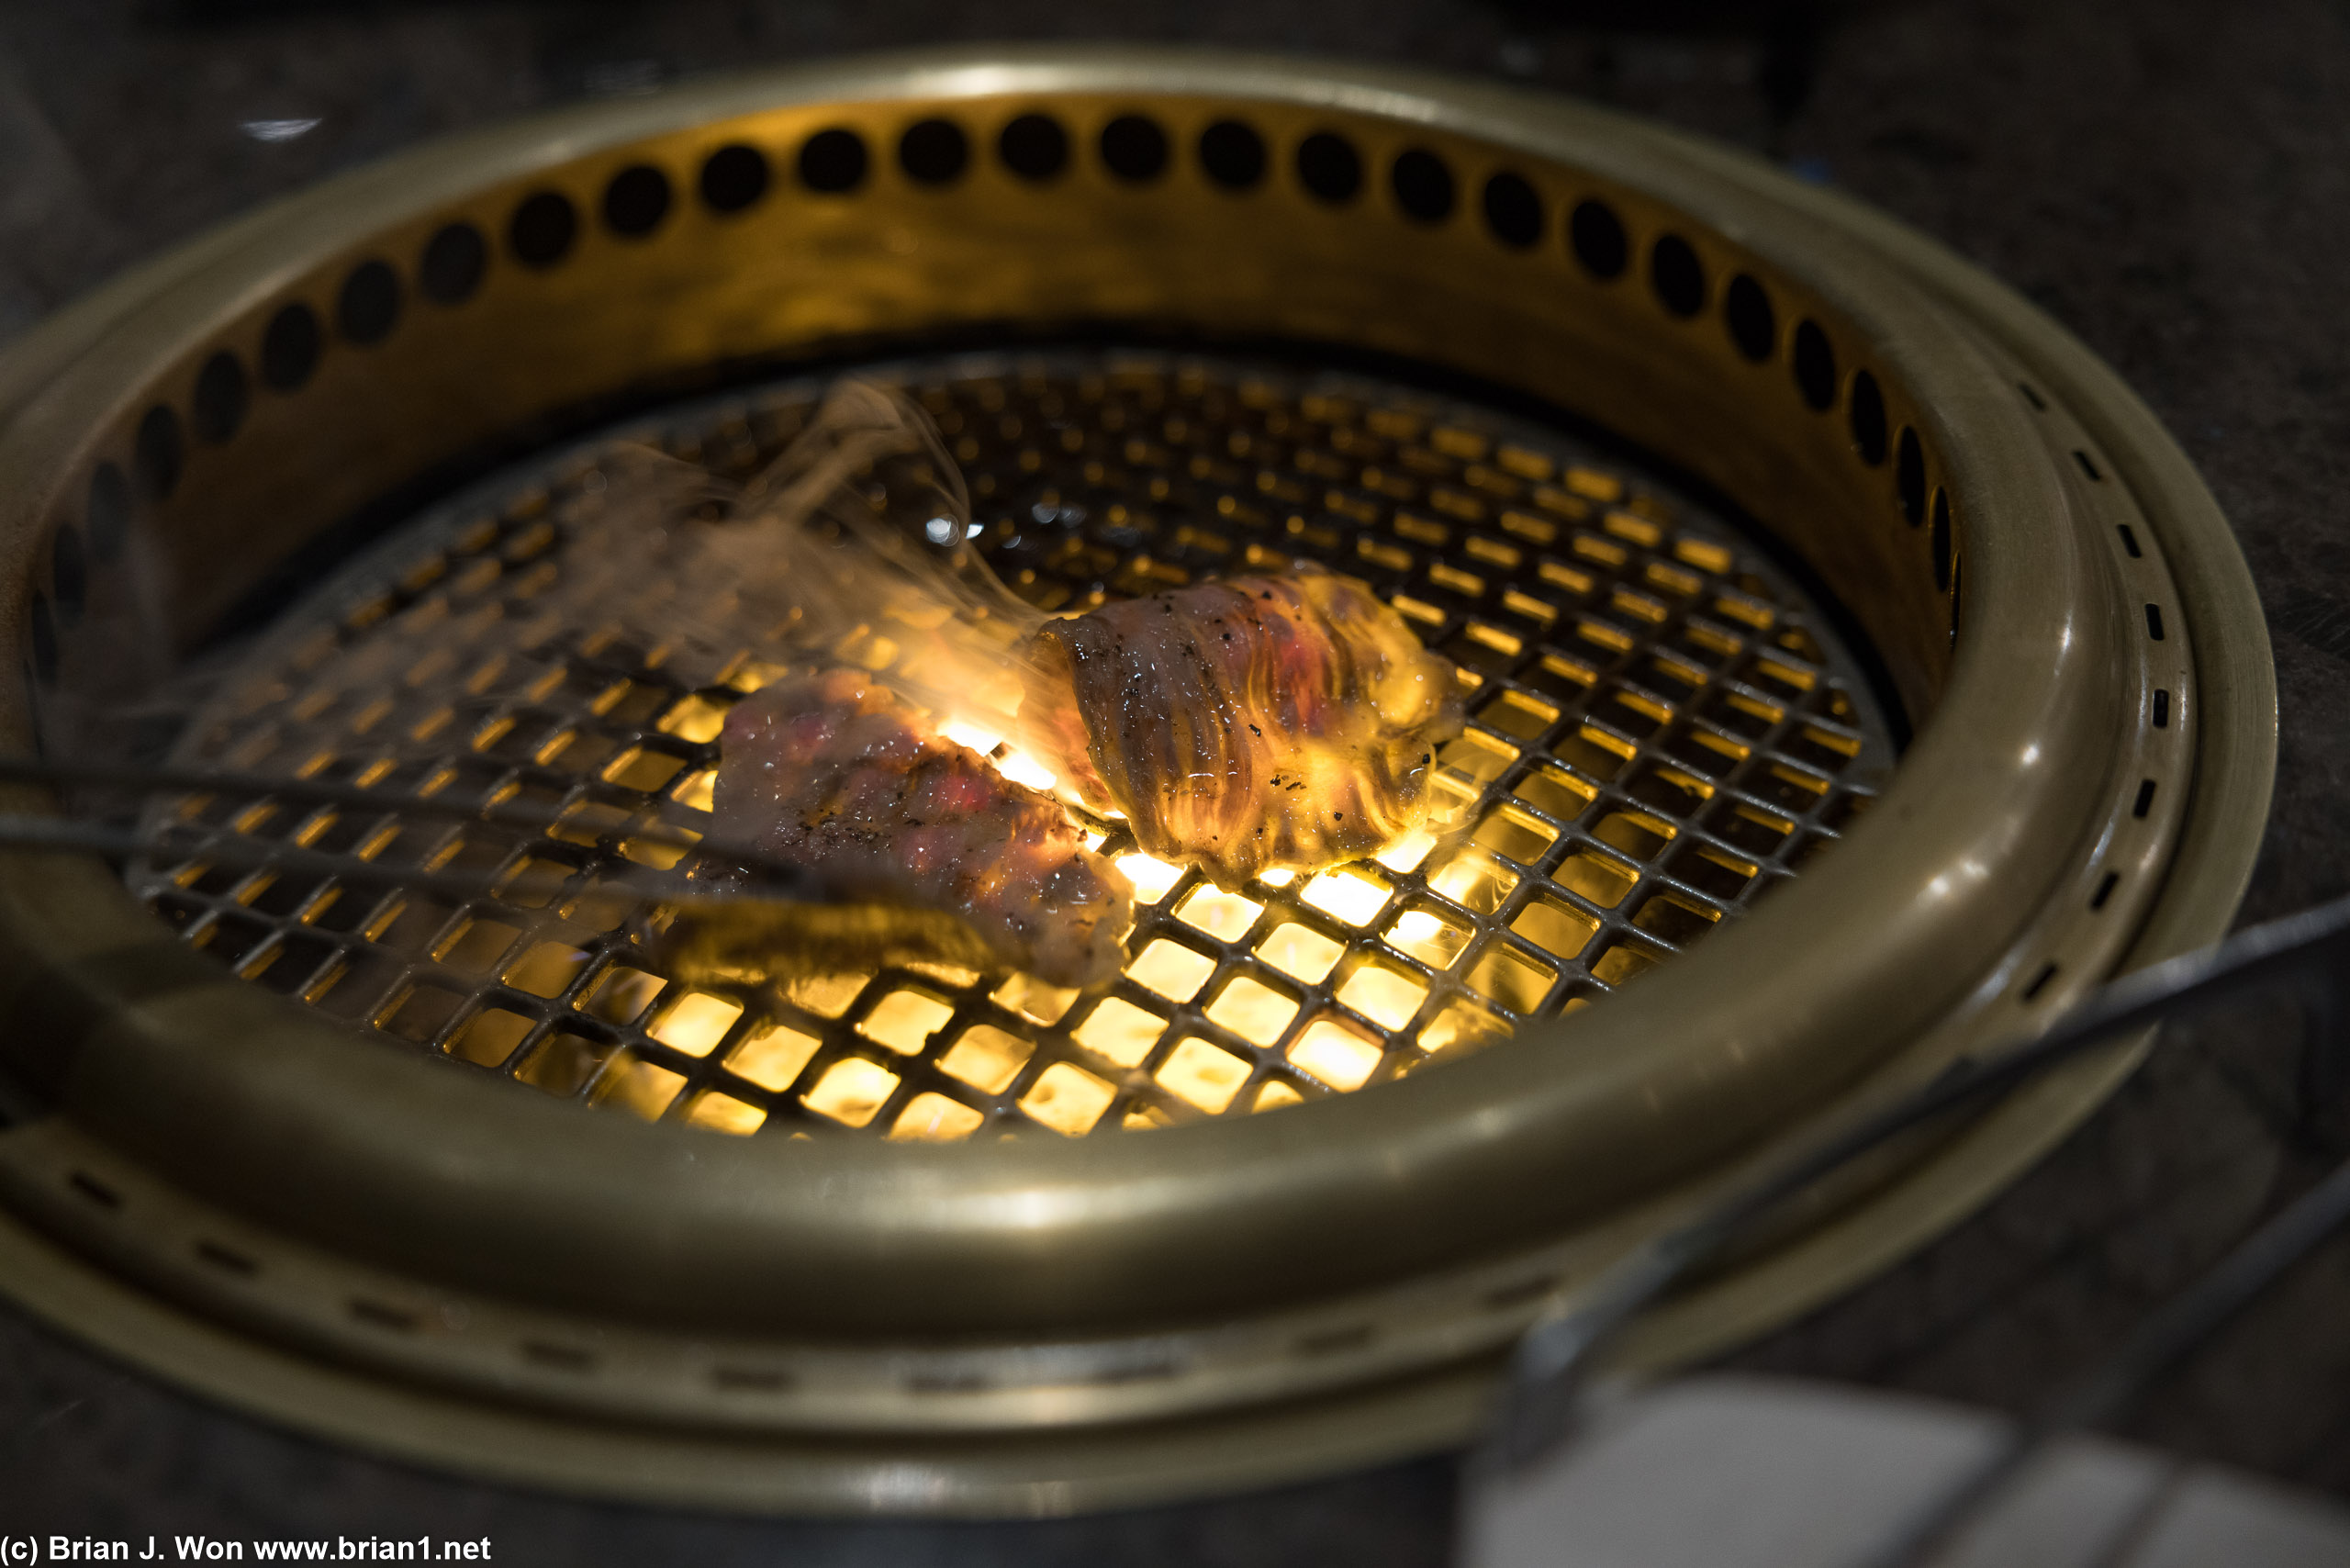 The shabu-shabu on the grill.